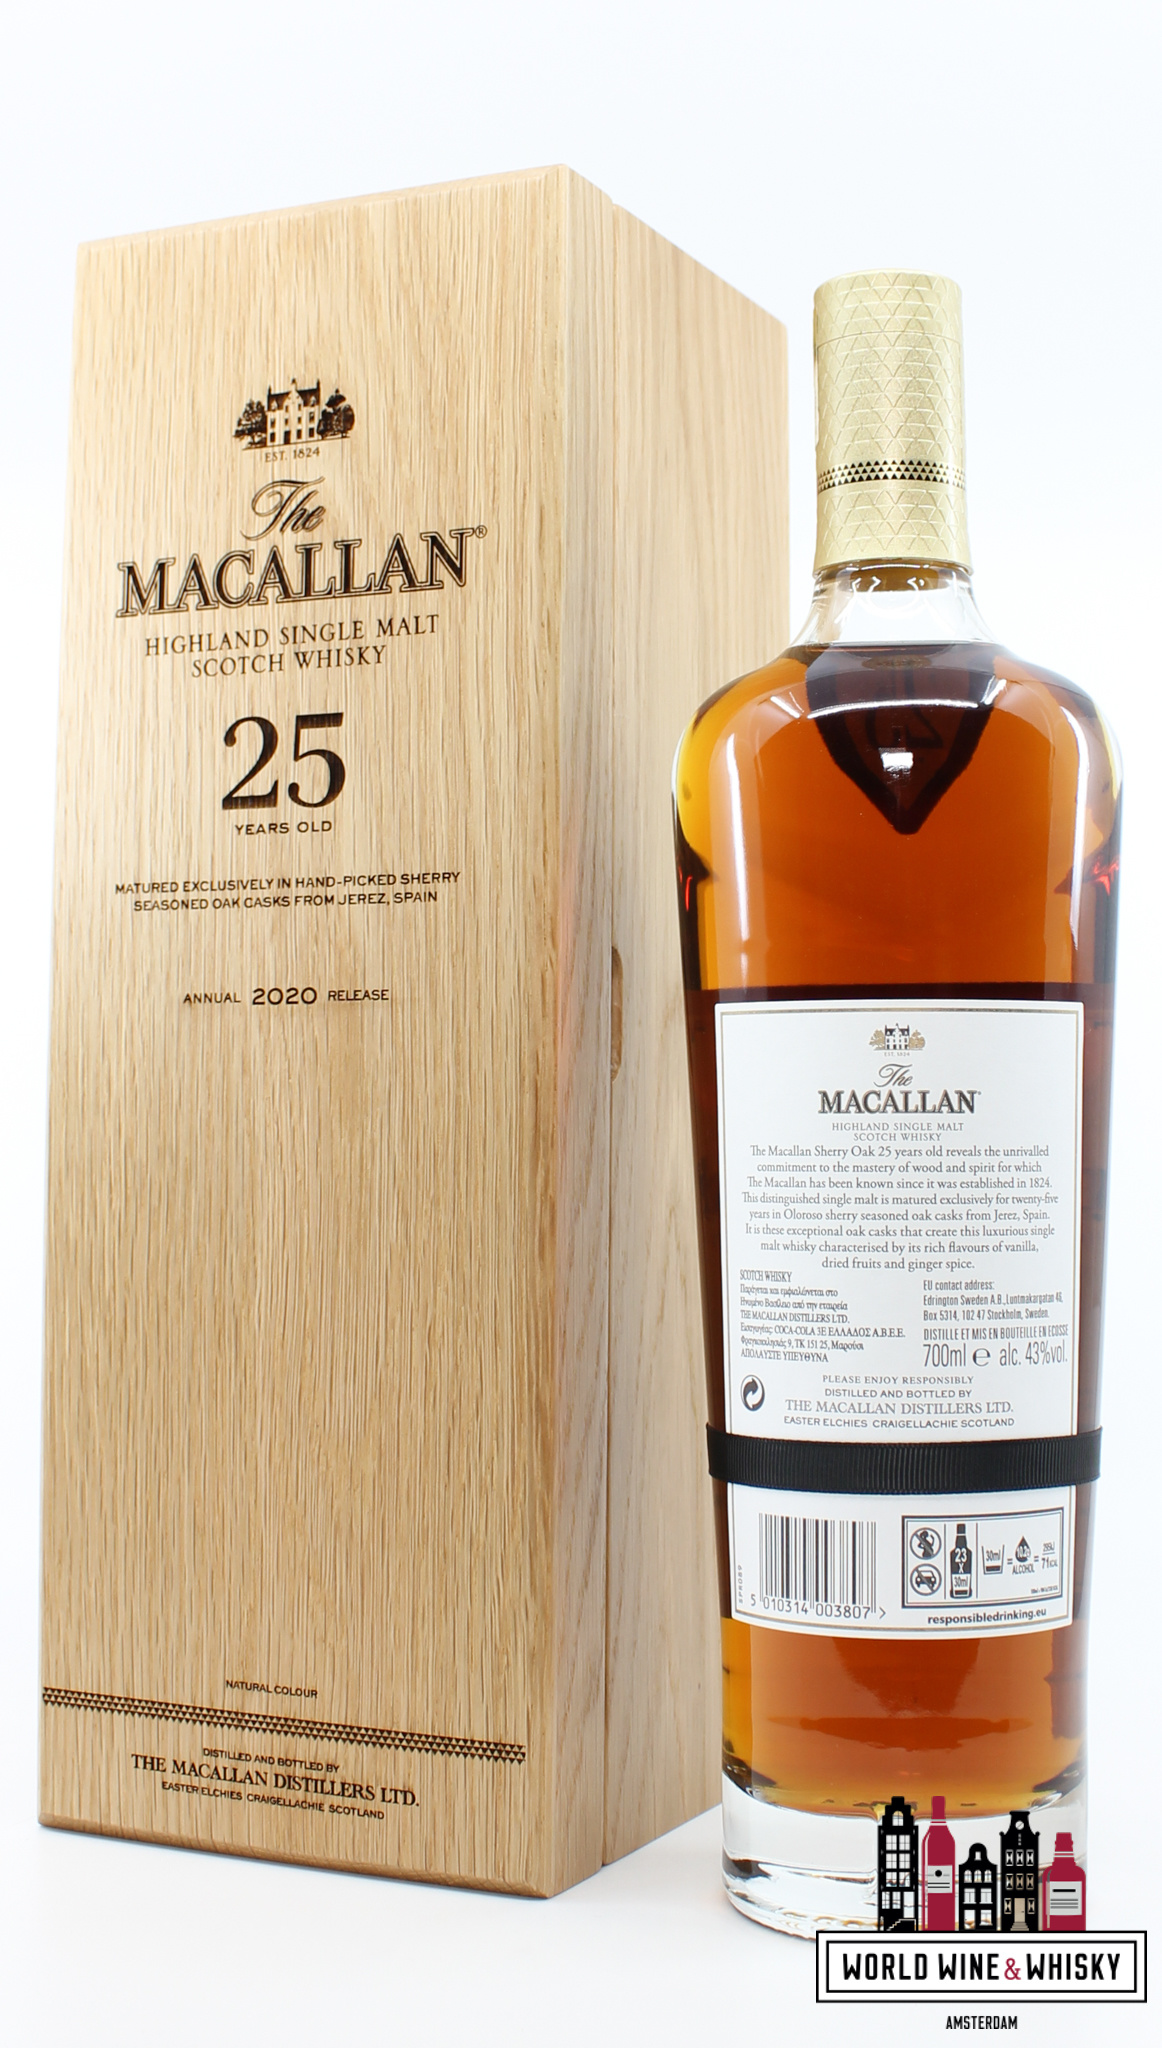 Macallan Macallan 25 Years Old 2020 Release - Sherry Oak Casks from Jerez 43% (in luxury wooden case)